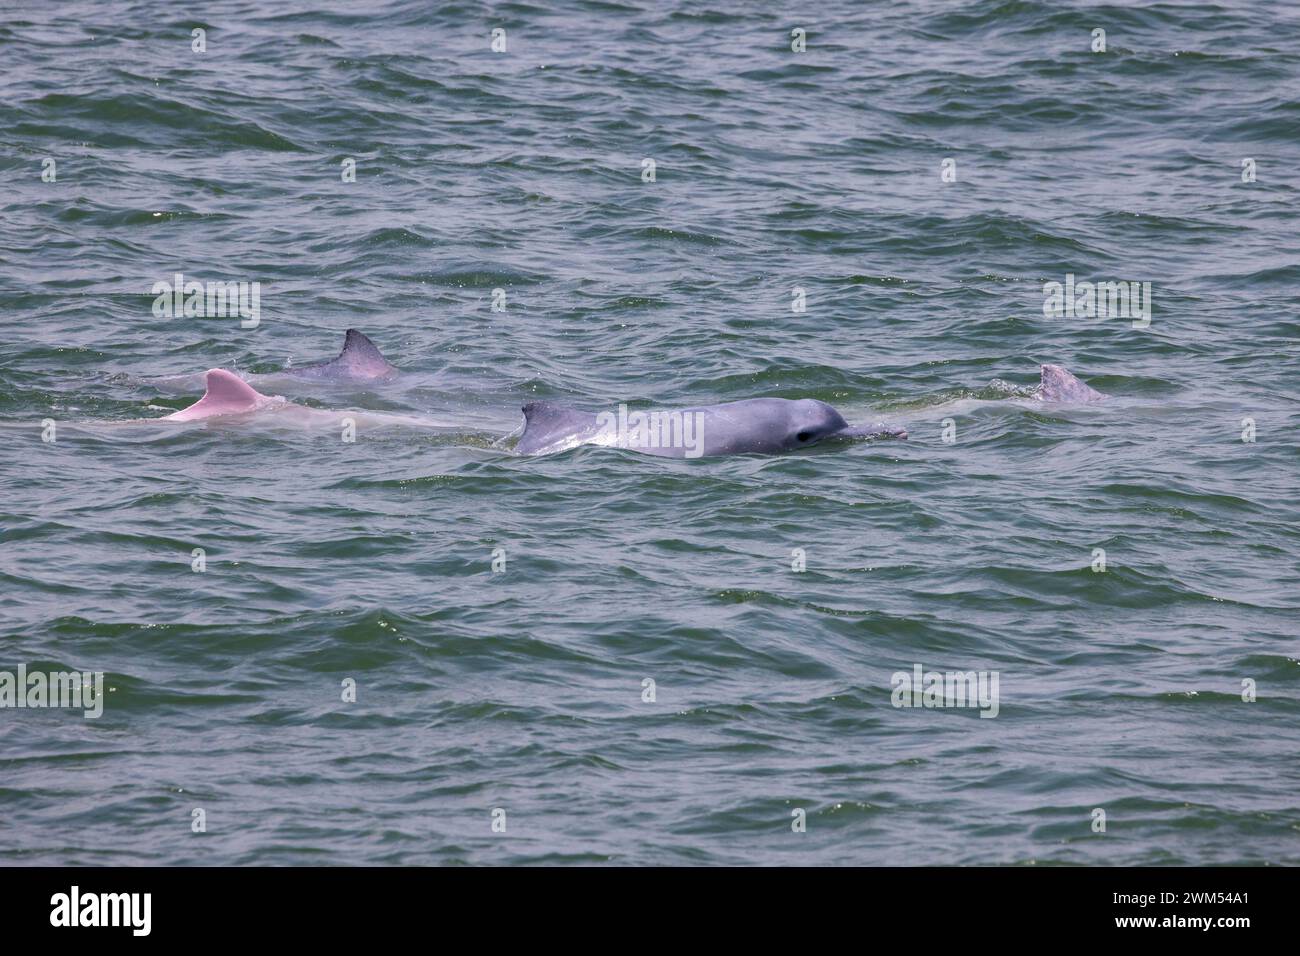 Juvénile et adulte dauphin à bosse de l'Indo-Pacifique / dauphin blanc chinois / dauphin rose (Sousa Chinensis) dans les eaux de Hong Kong Banque D'Images